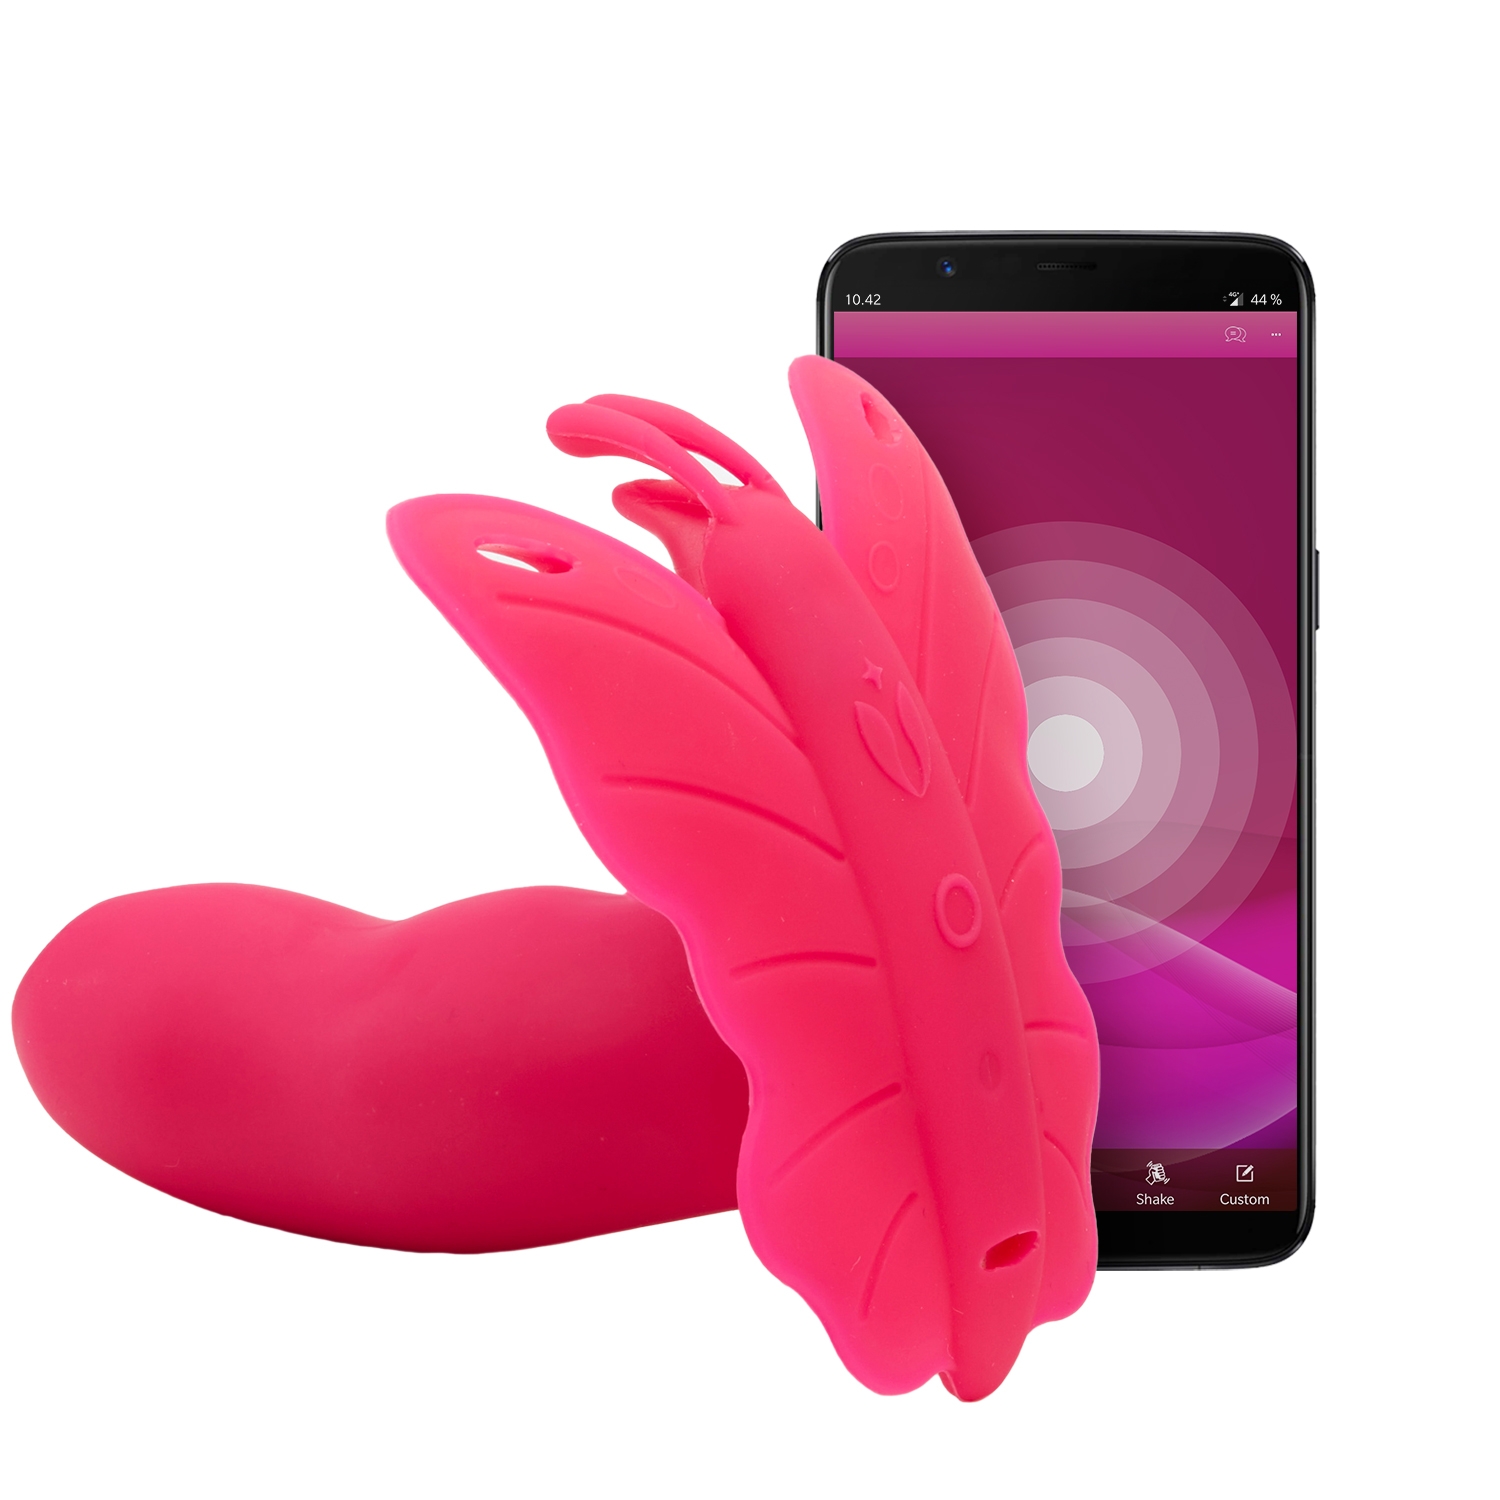 Realov Lydia I Smart Butterfly Vibrator - Pink